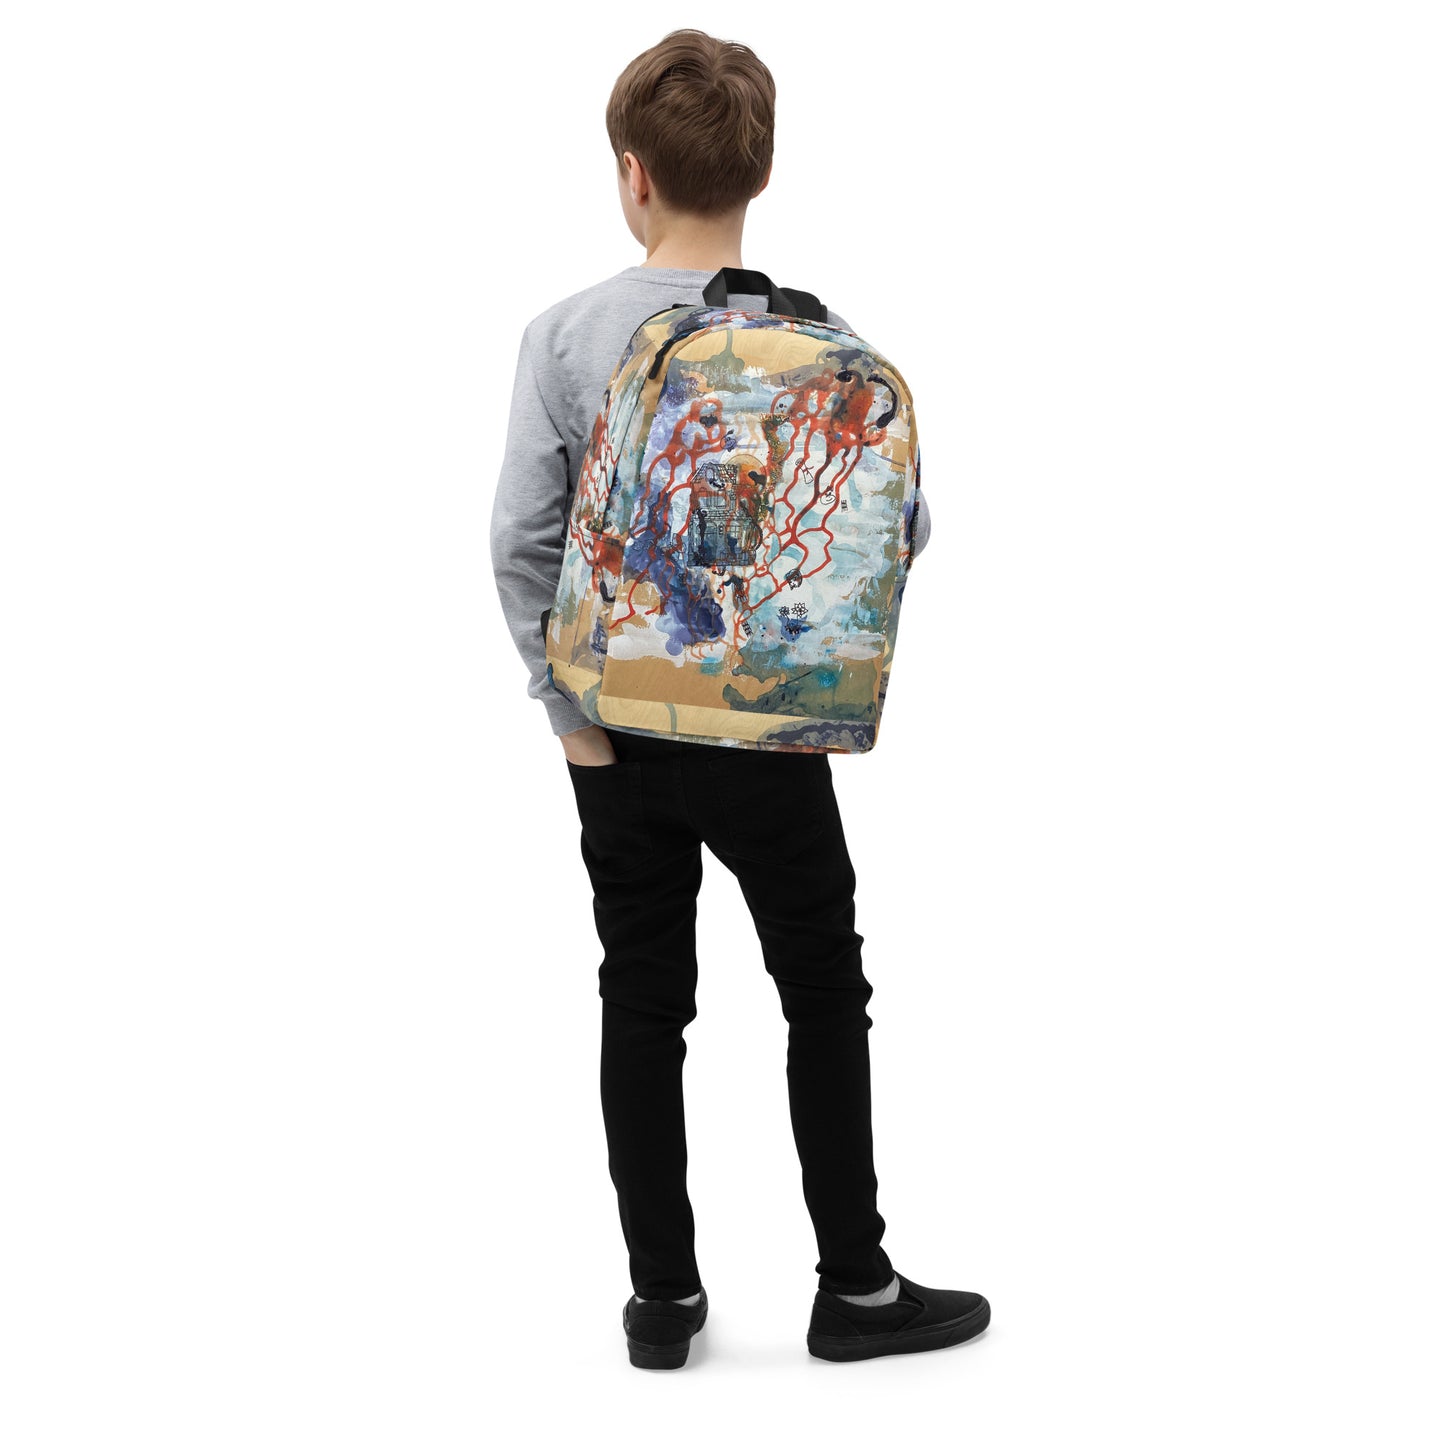 Minimalist Backpack - Freedom